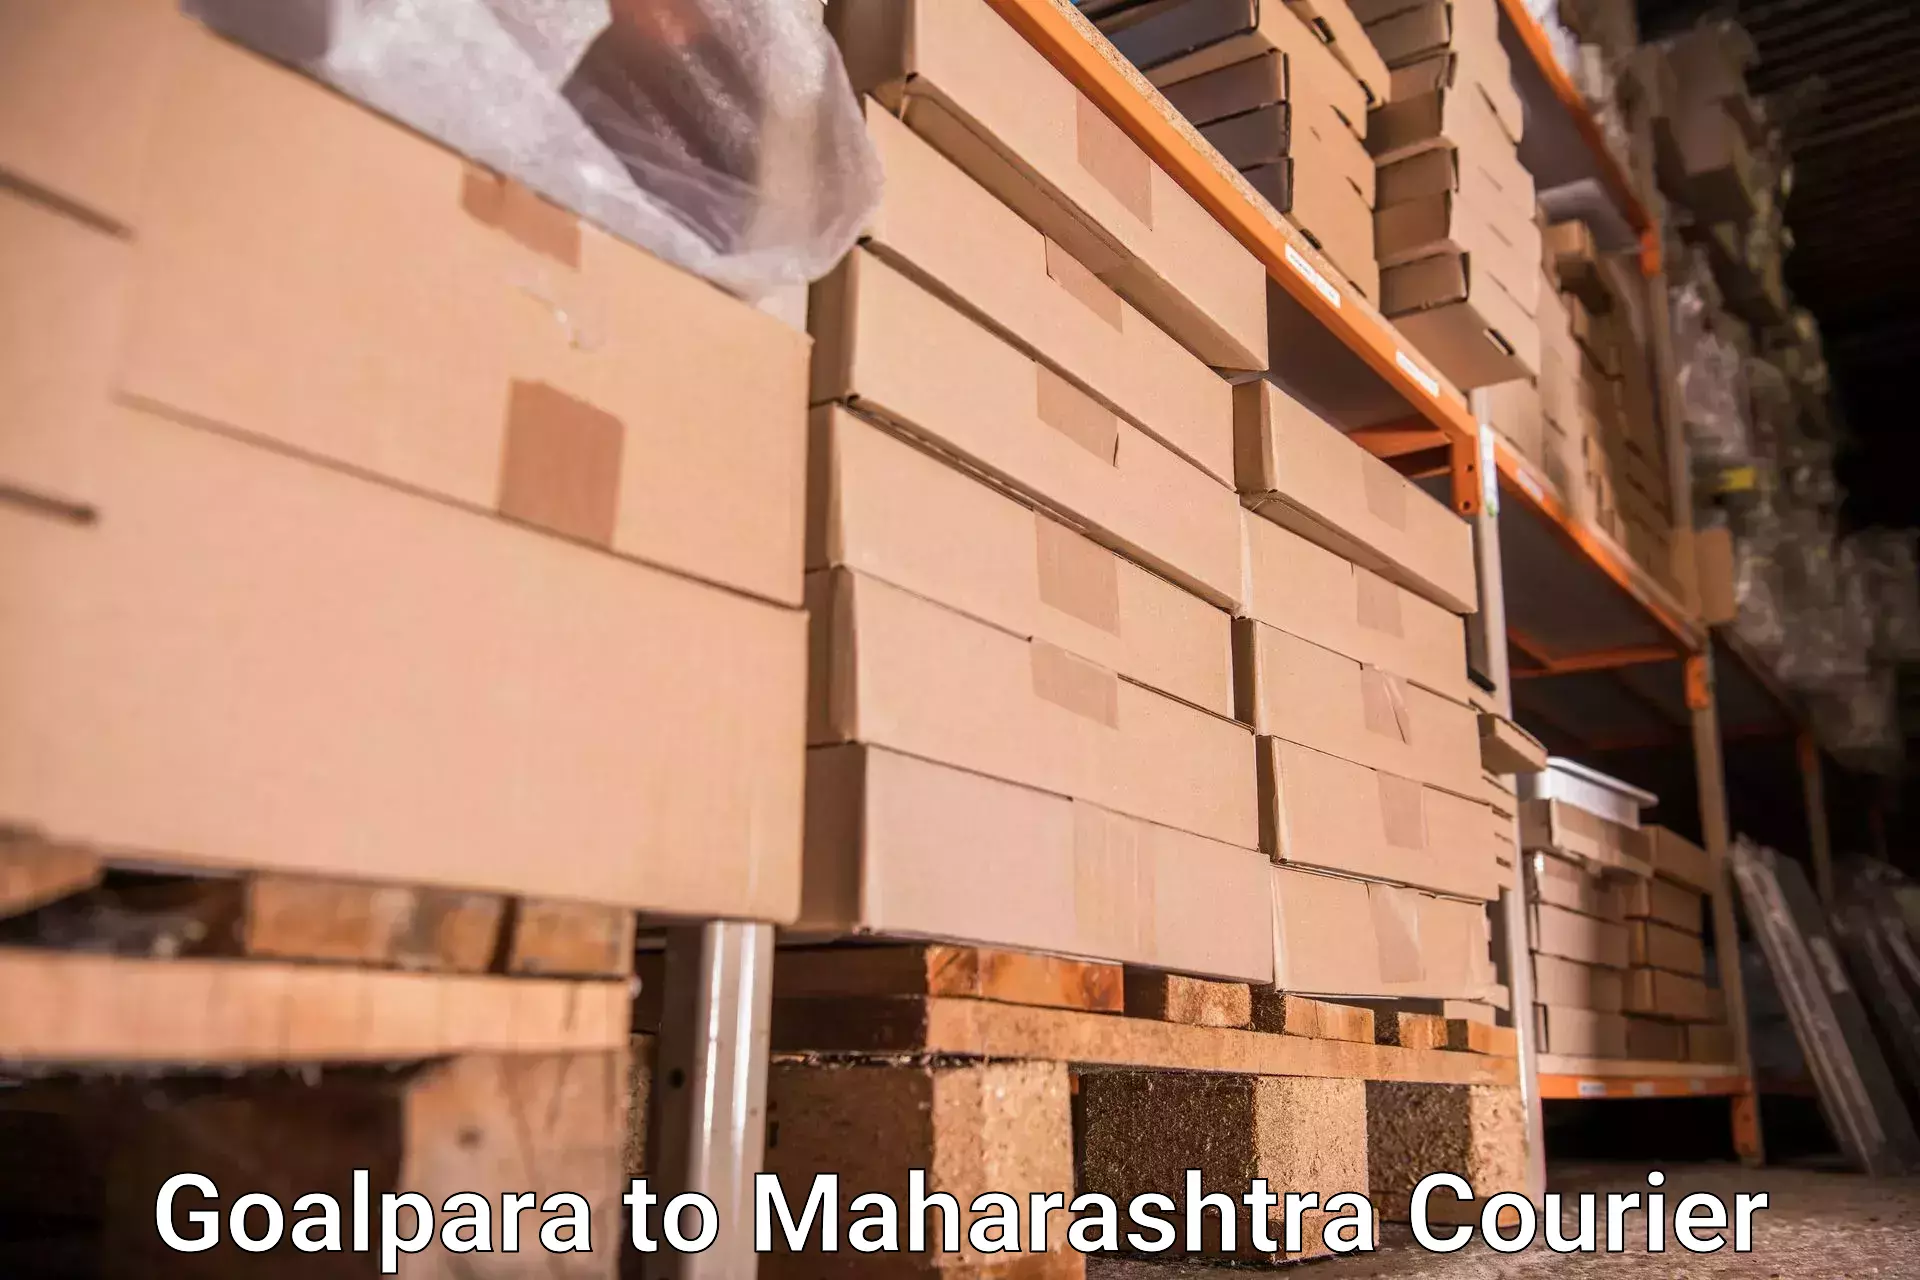 Luggage transport consultancy Goalpara to Mahabaleshwar